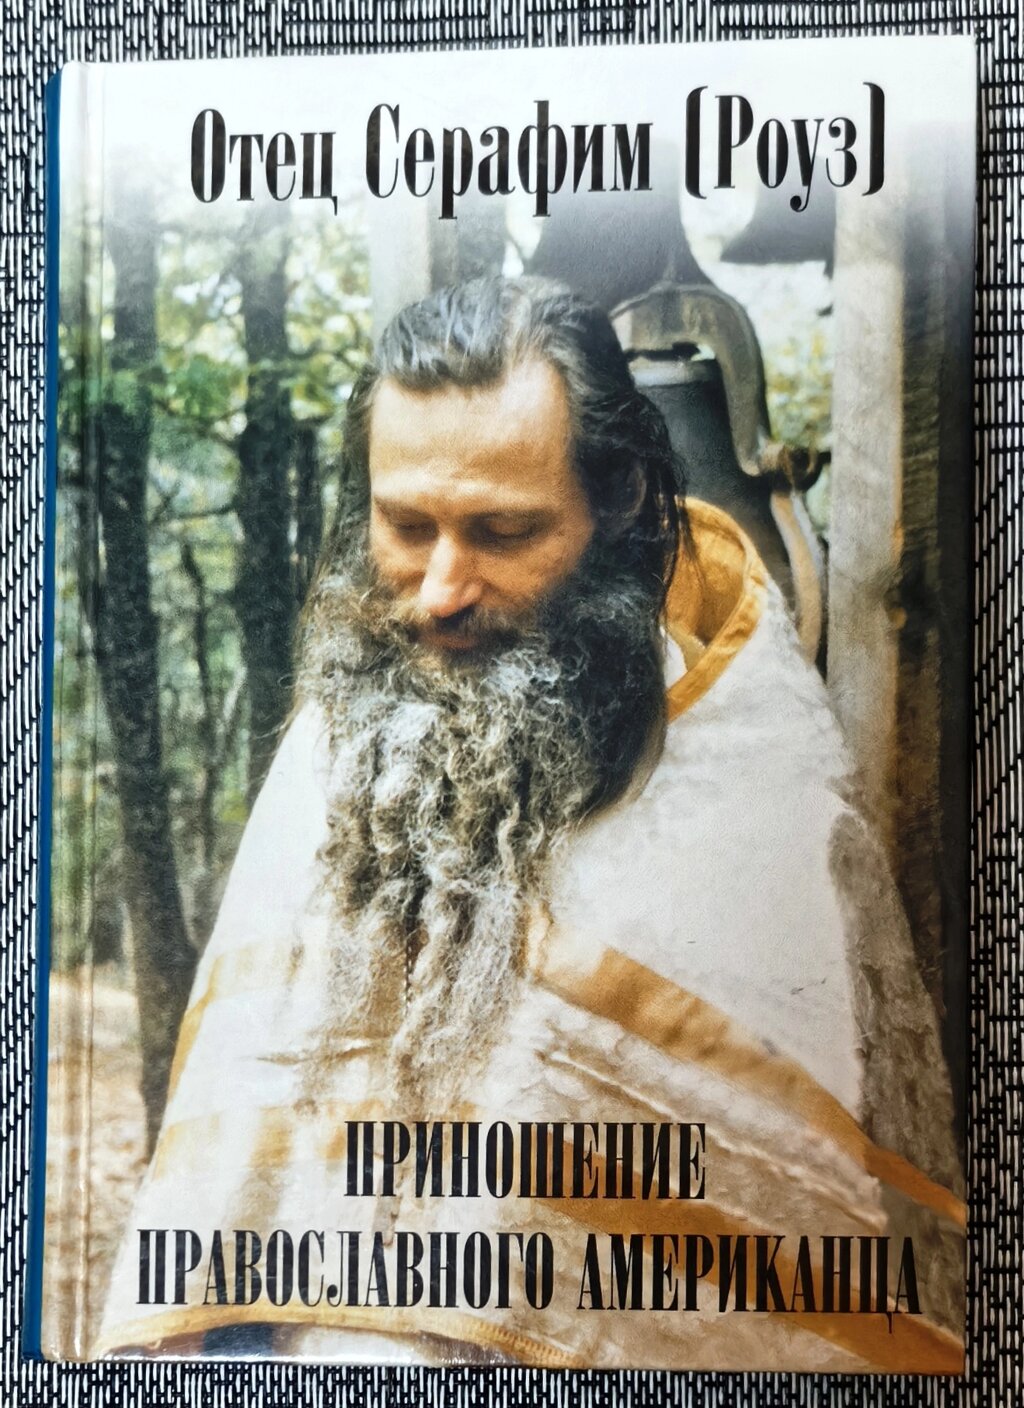 Принесення православного американця. Батько Серафим (Роуз) від компанії Правлит - фото 1